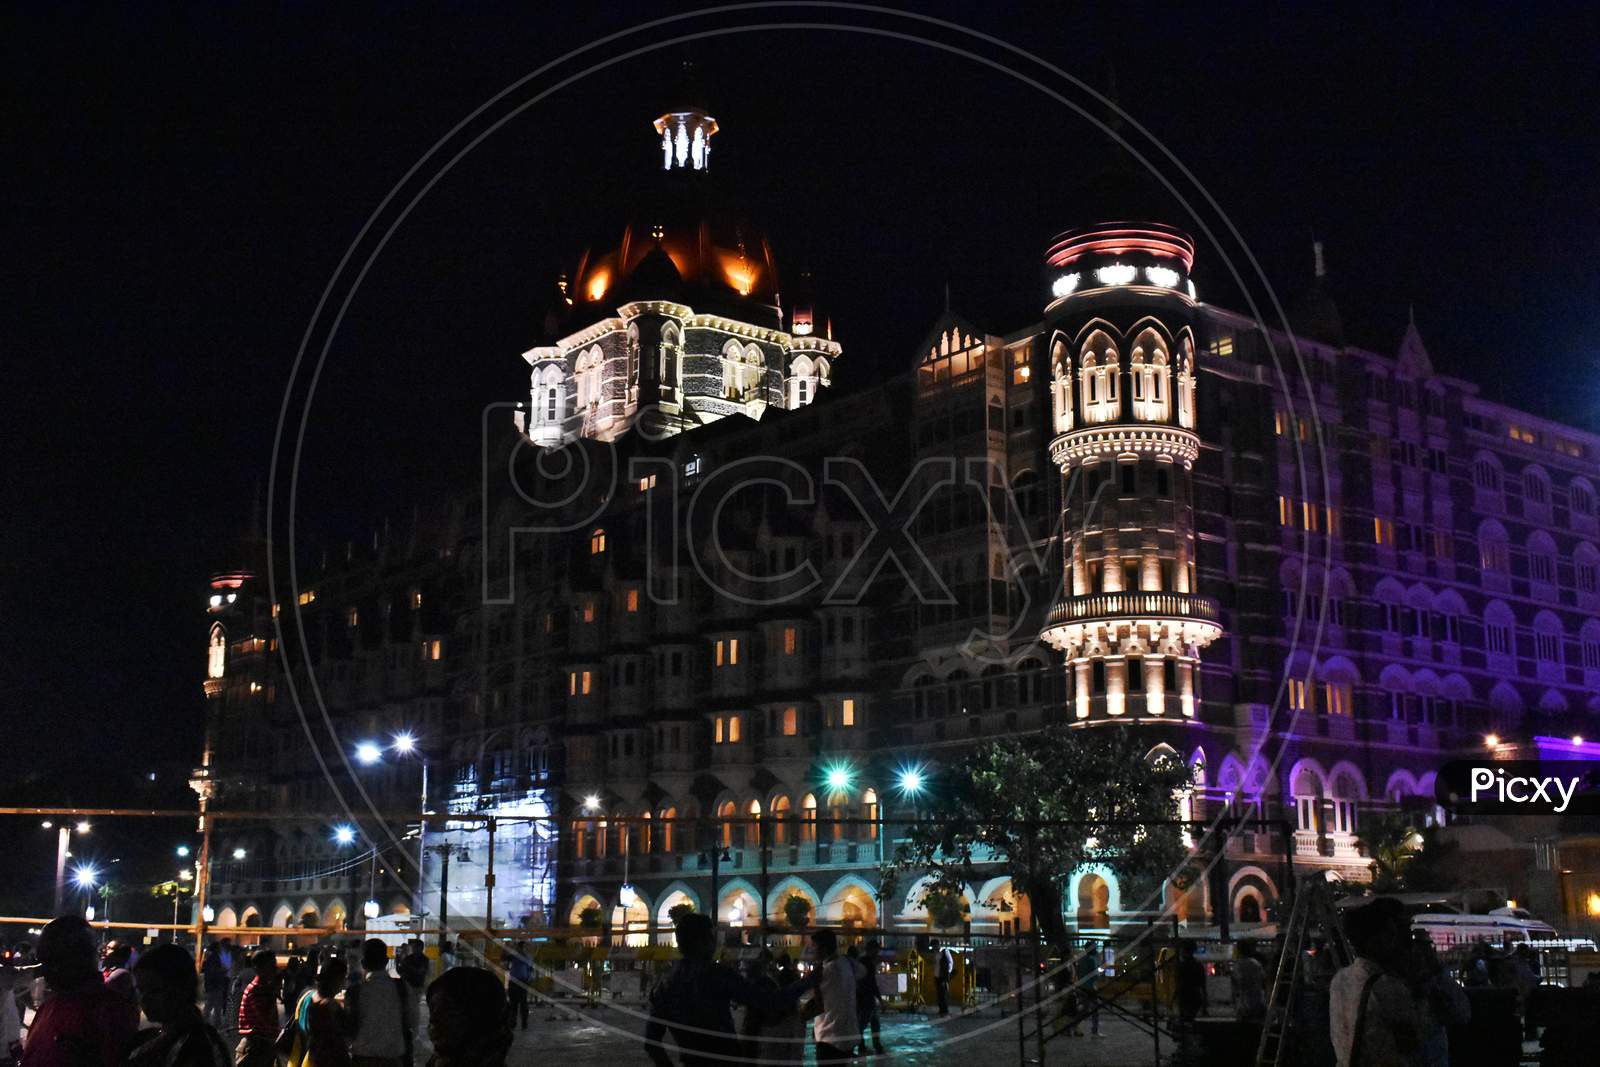 Taj Hotel In Mumbai India, With Beautiful Glowing Lights